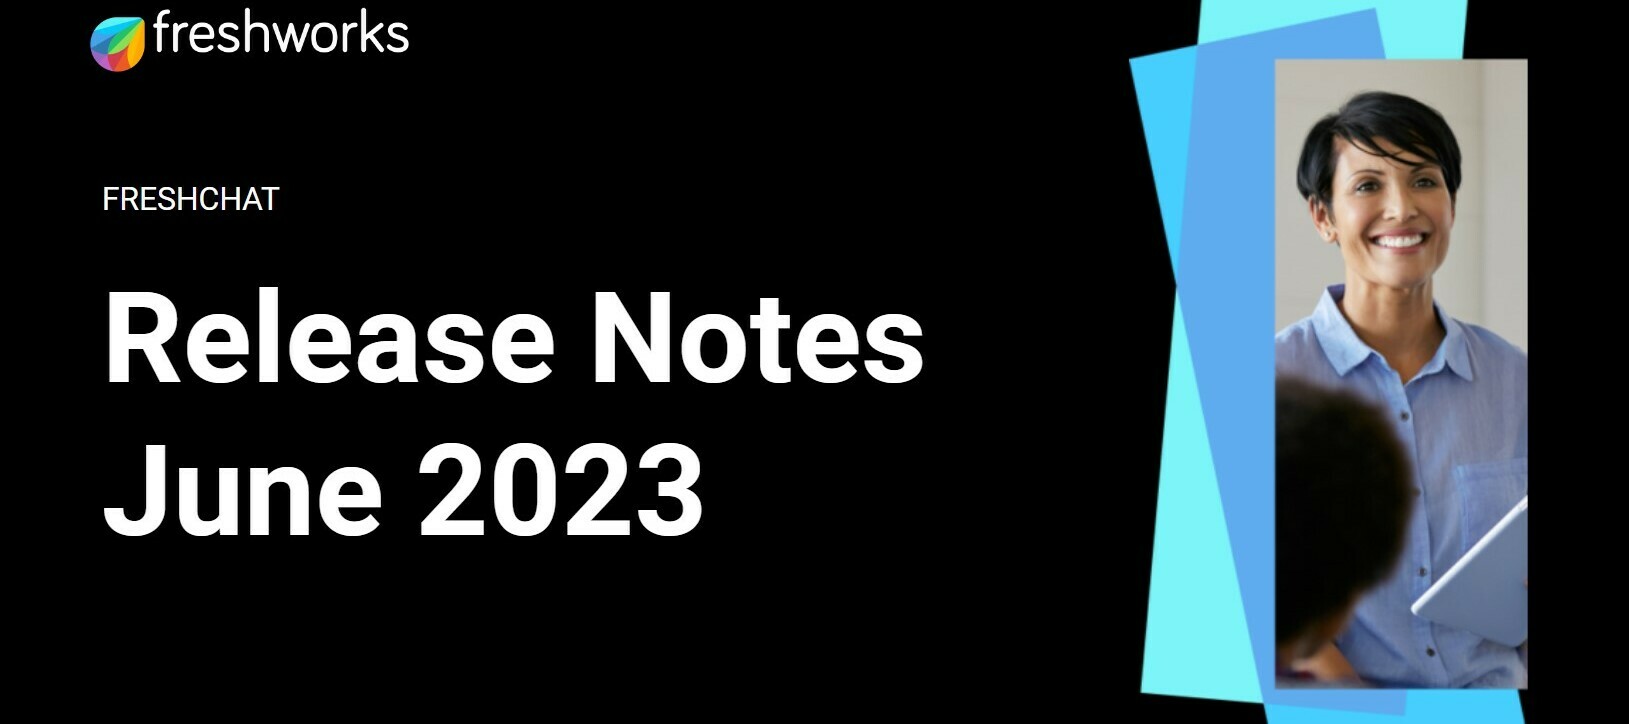 Freshchat Release Notes - June 2023